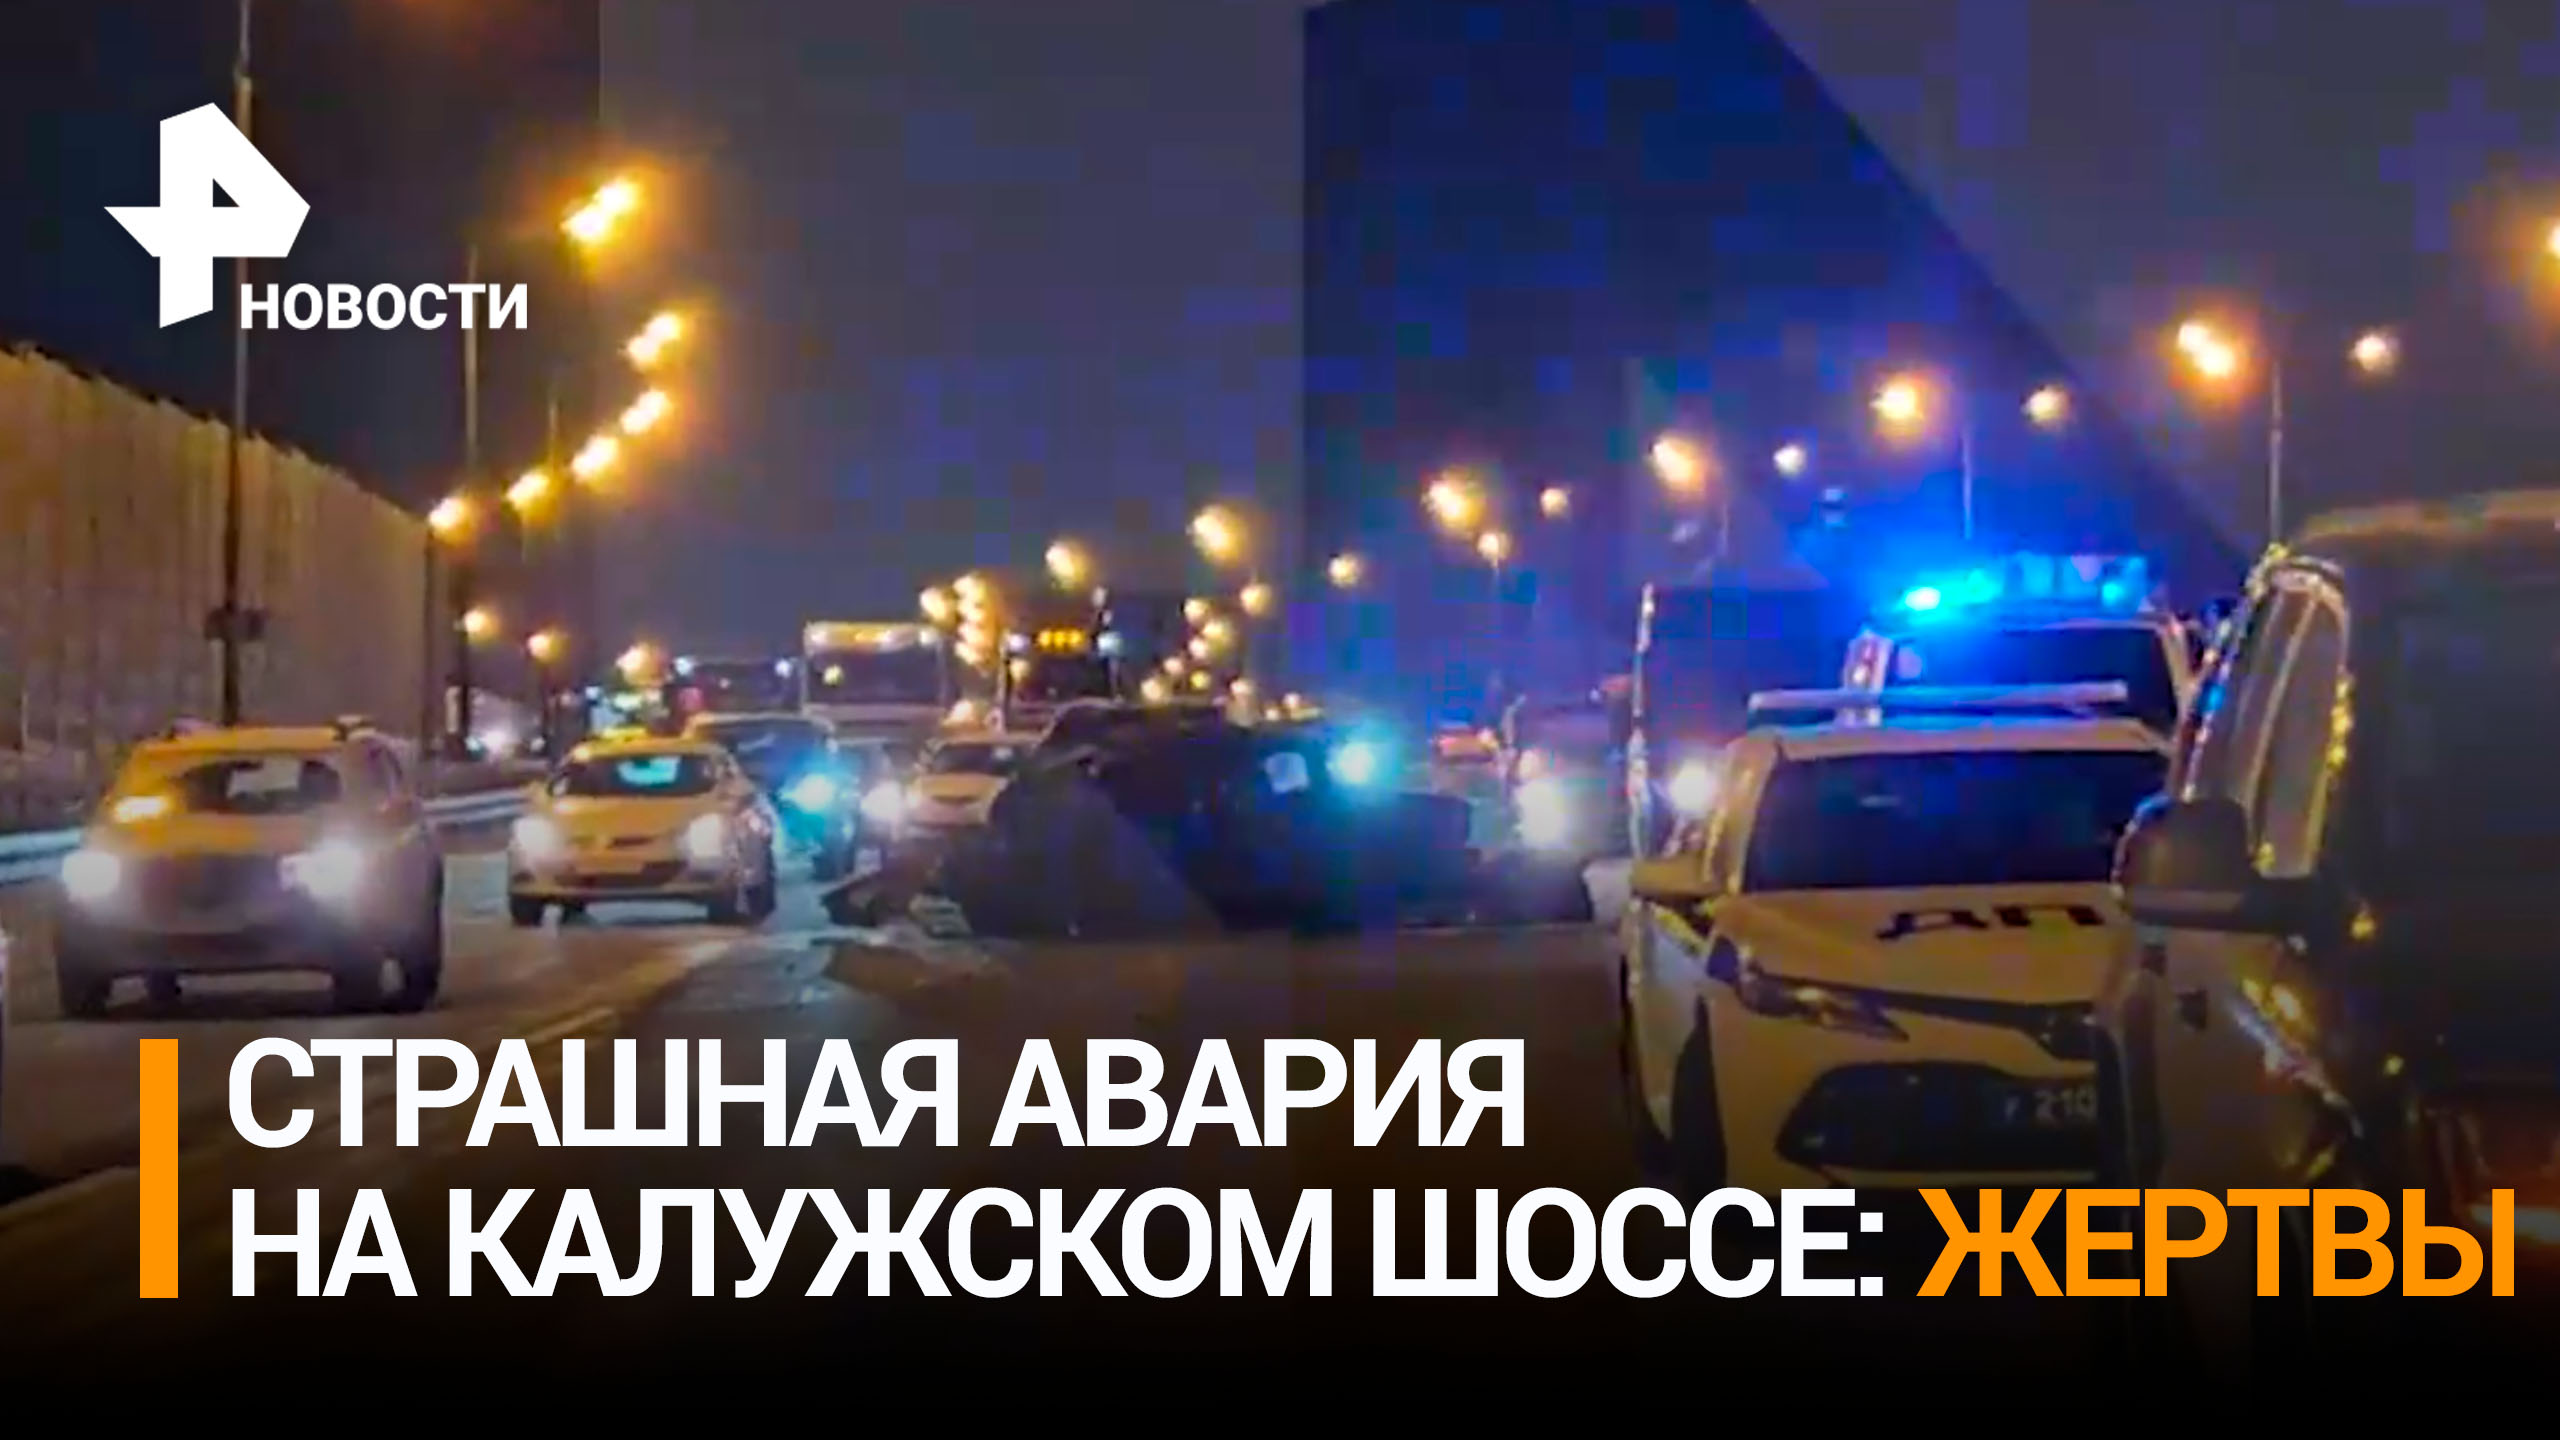 Страшная авария в Москве унесла жизни двух человек - ДТП произошло на Калужском шоссе / РЕН Новости